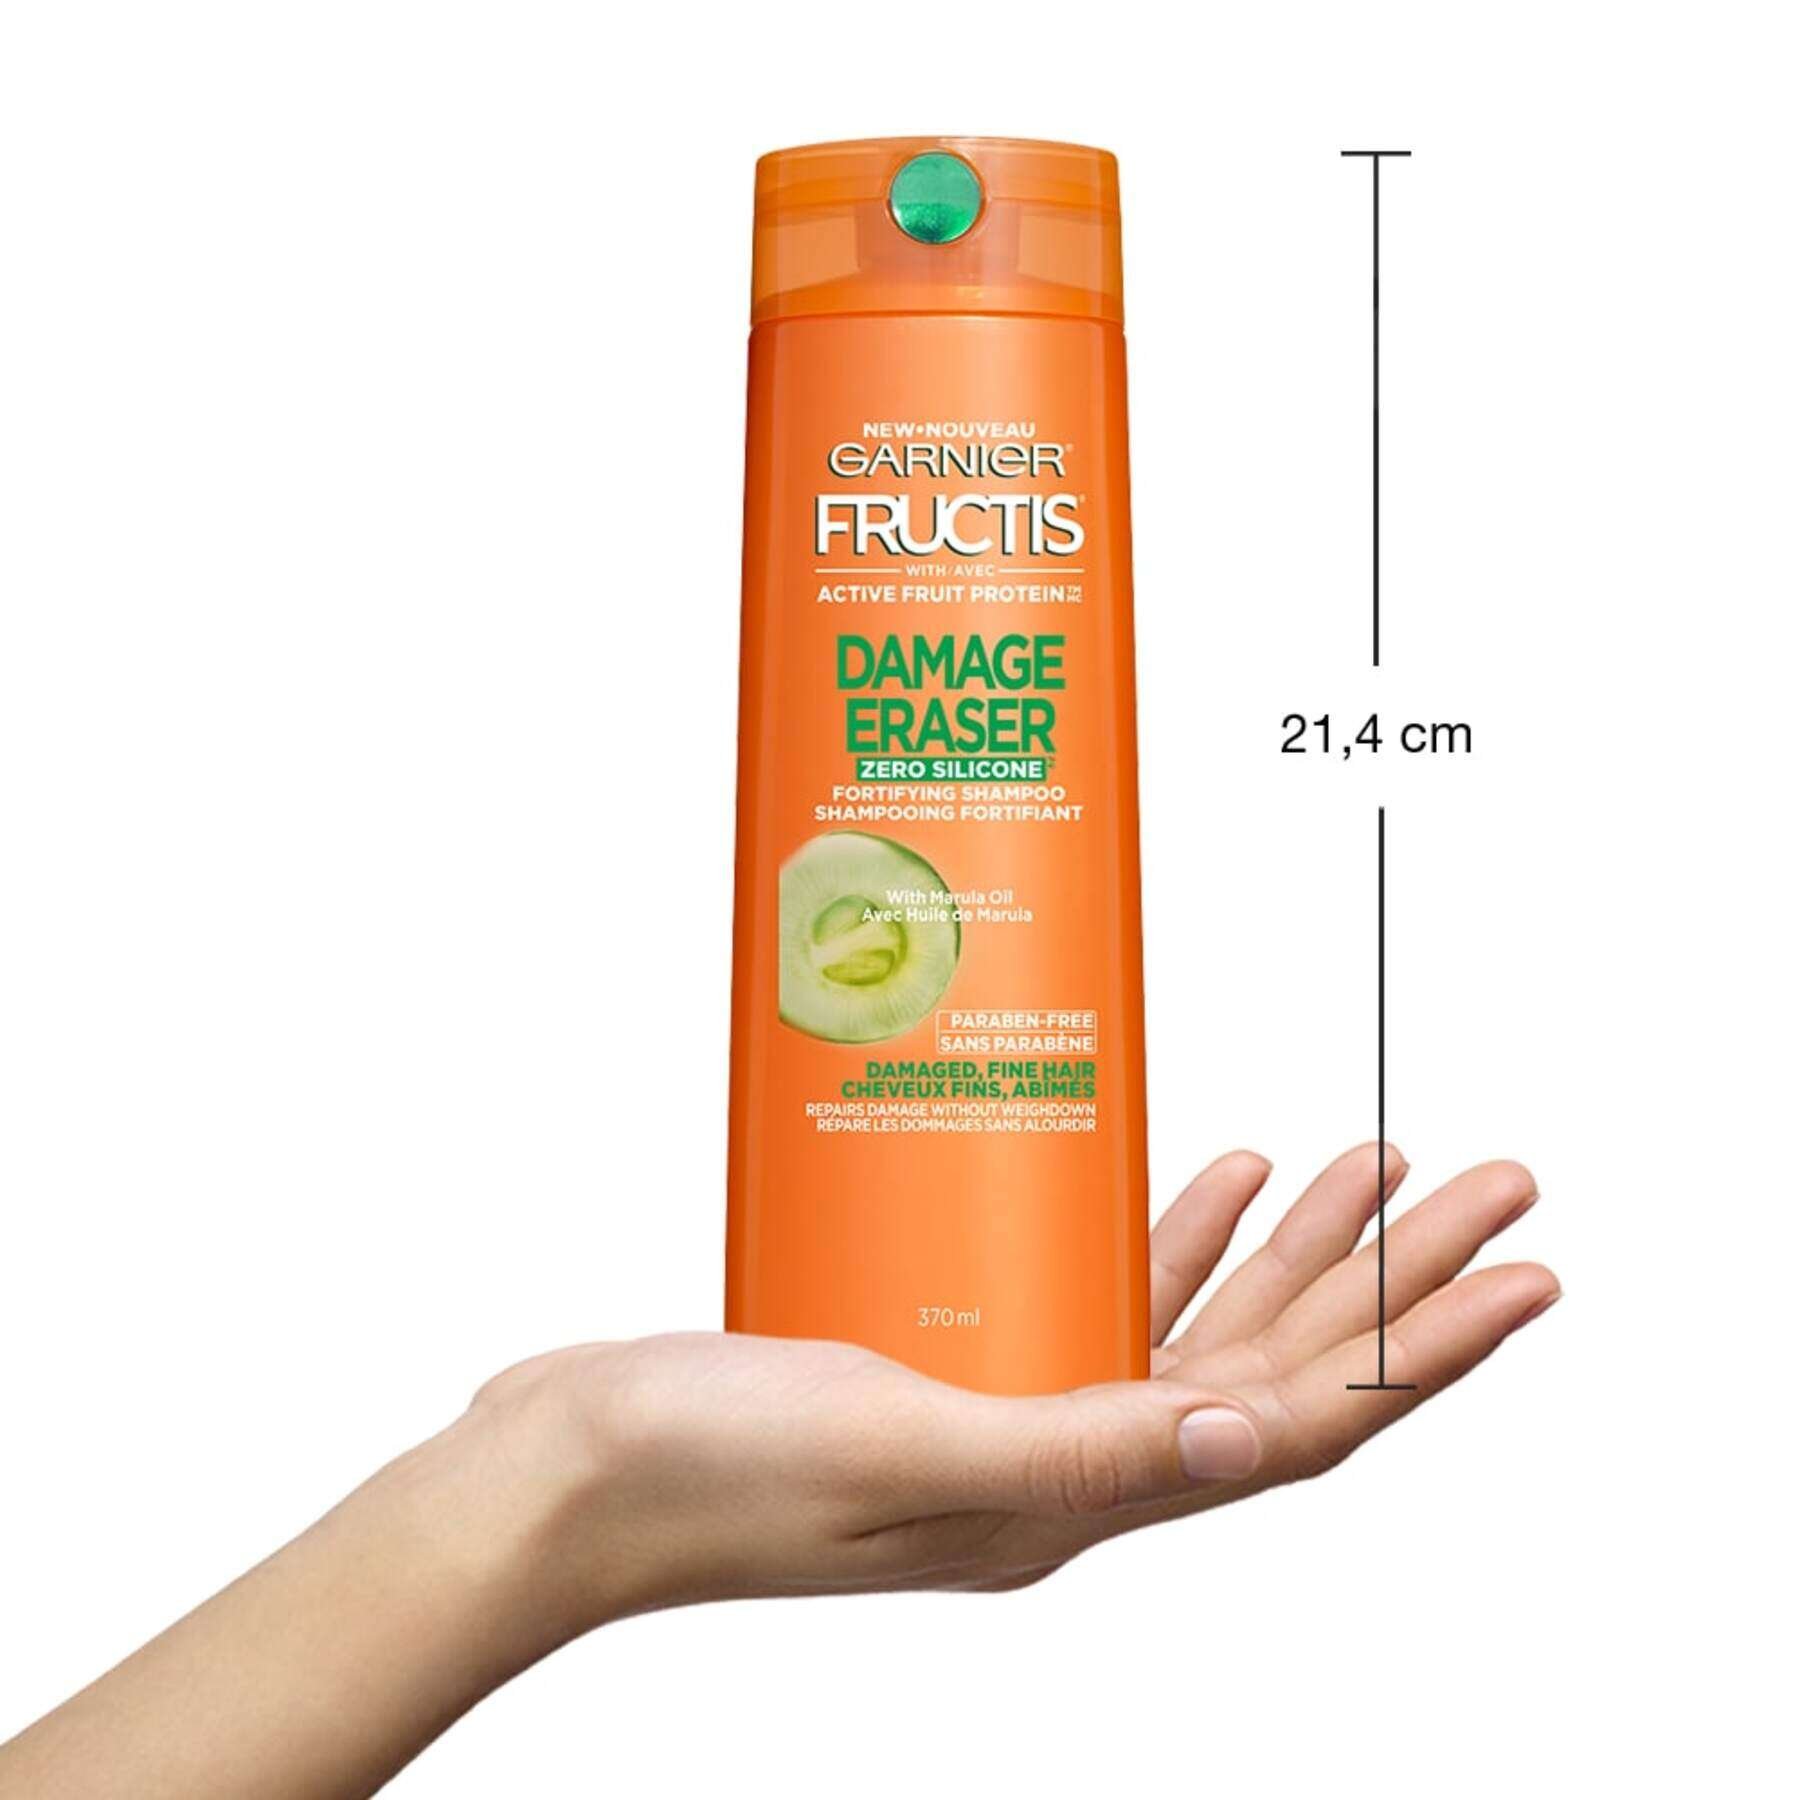 garnier shampoo fructis damage eraser zero silicone shampoo 370 ml 603084495528 inhand